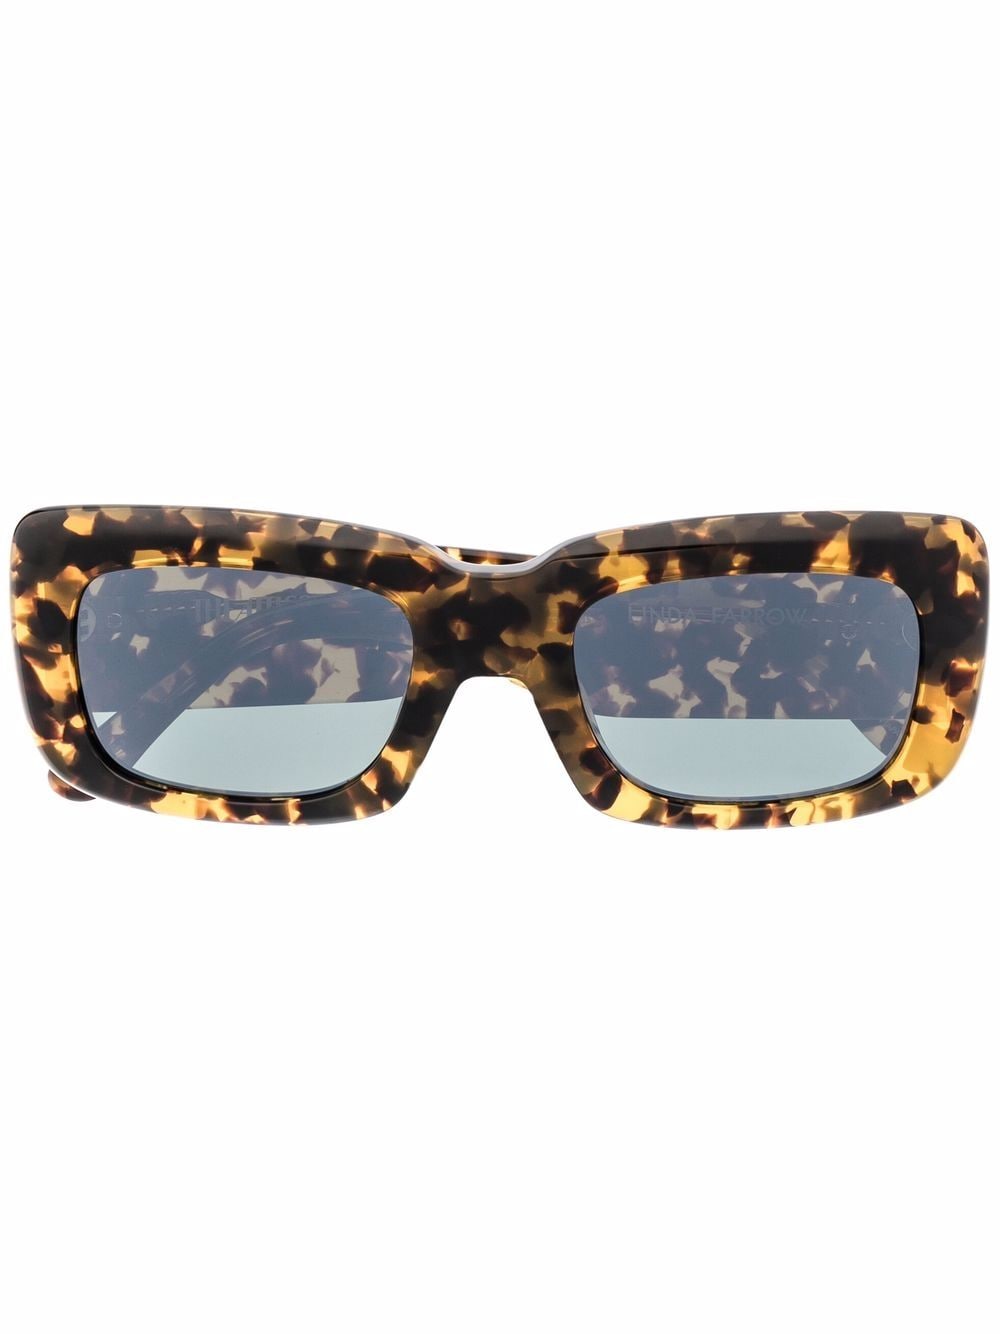 Image 1 of Linda Farrow x The Attico Marfa square-frame sunglasses